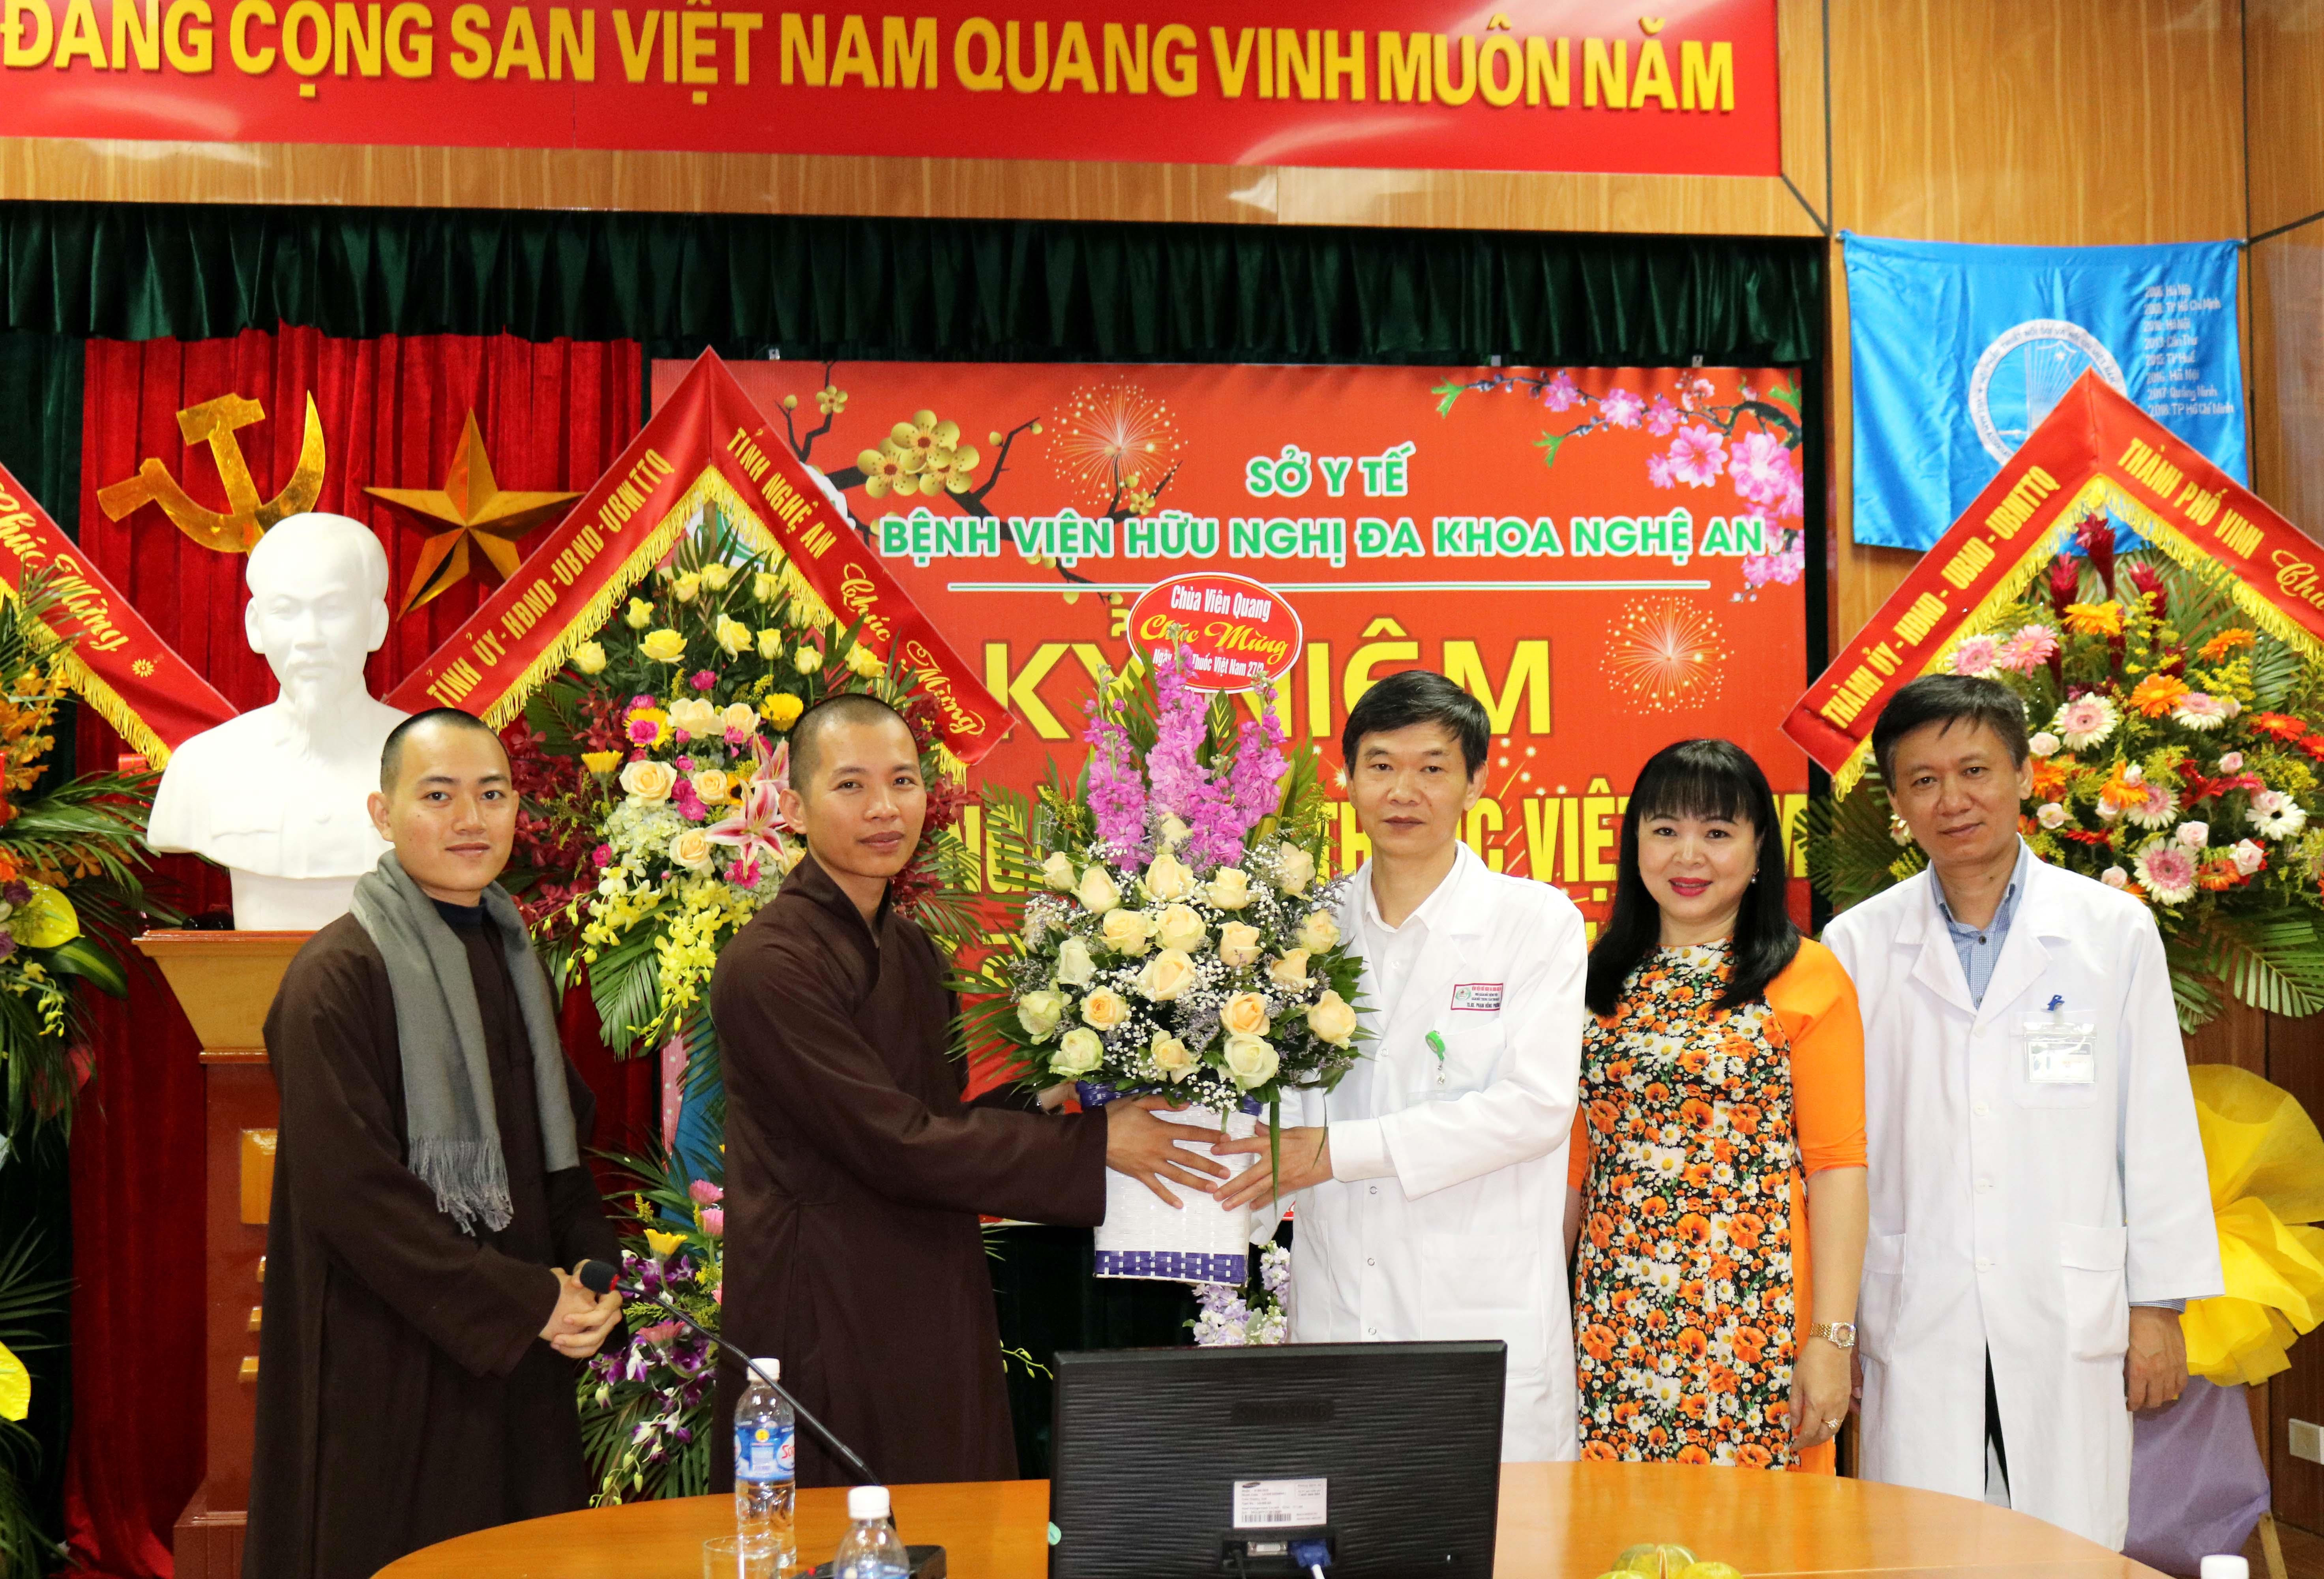 Sư thầy chùa Viên Quang tặng hoa chúc mừng cán bộ, y, bác sĩ bệnh viện Hữu nghị đa khoa Nghệ An